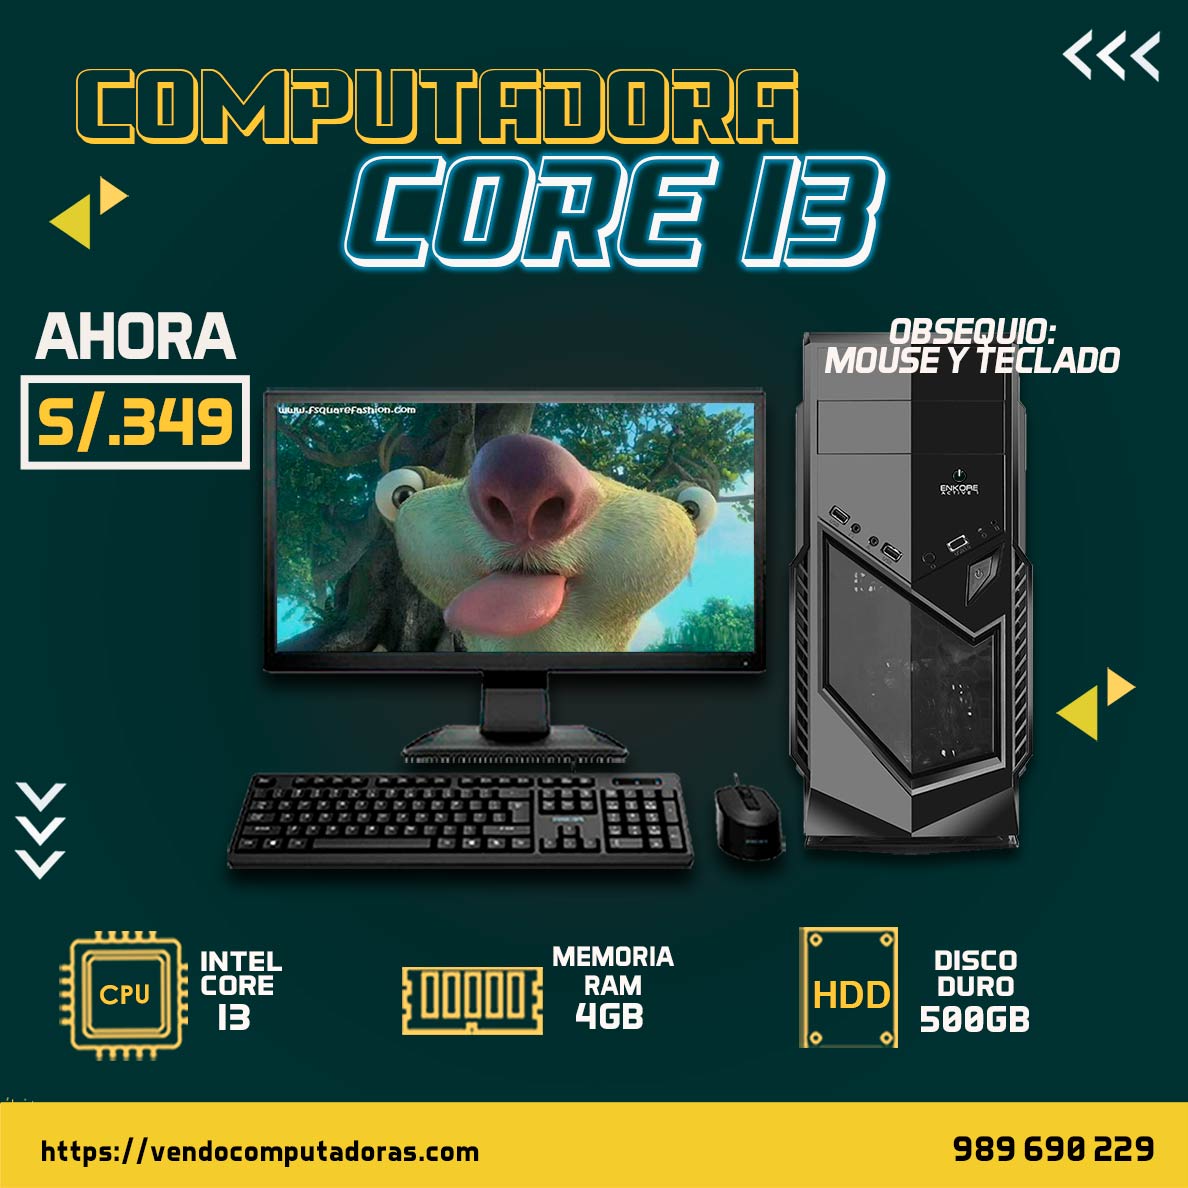 Computadora Core I3 en descuento